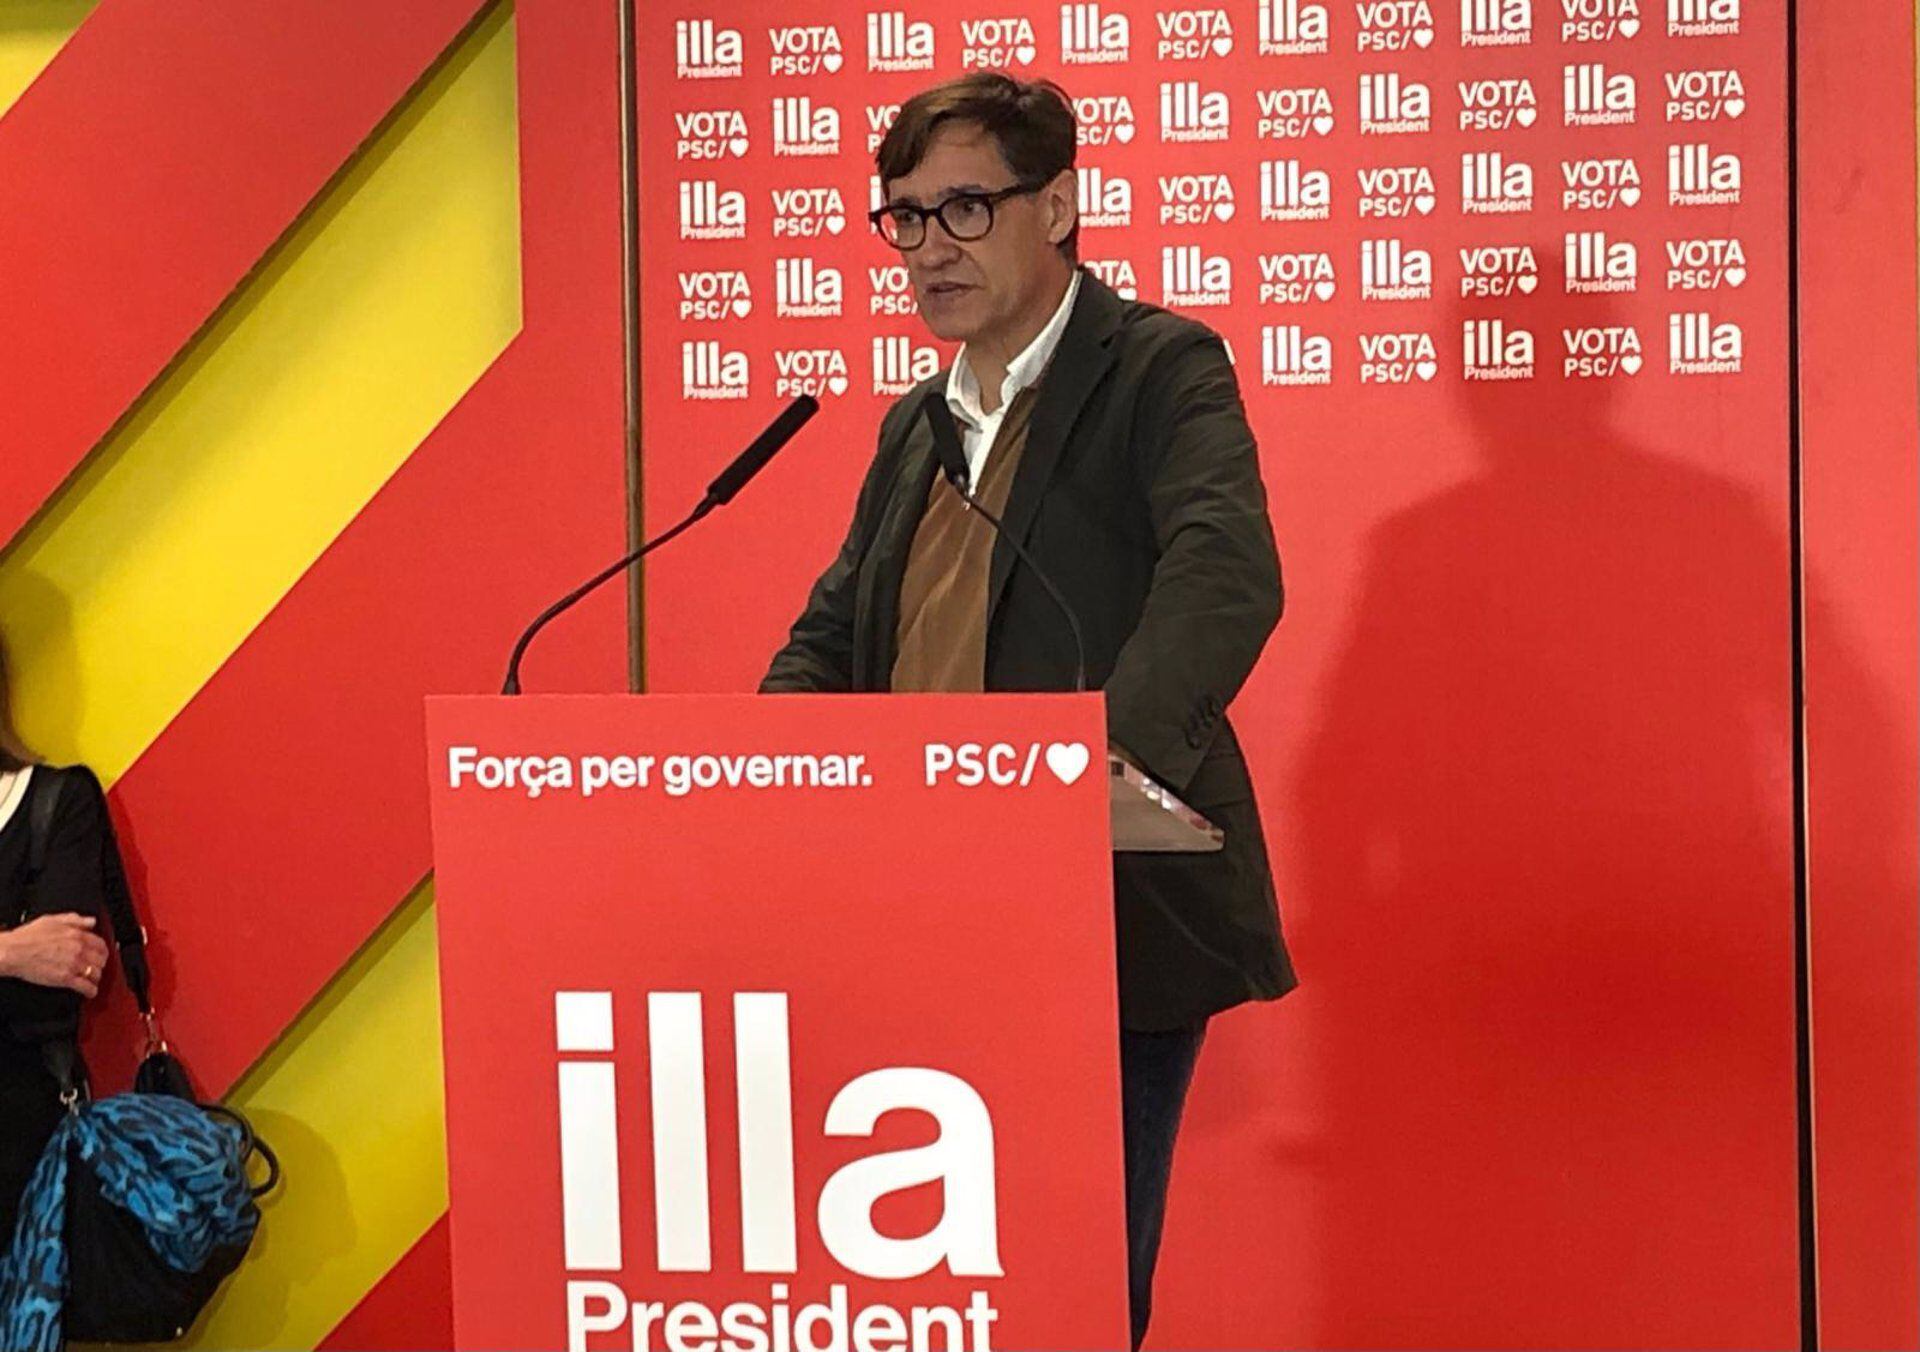 Illa quiere que Sánchez continúe su trabajo “especialmente” bueno para Cataluña